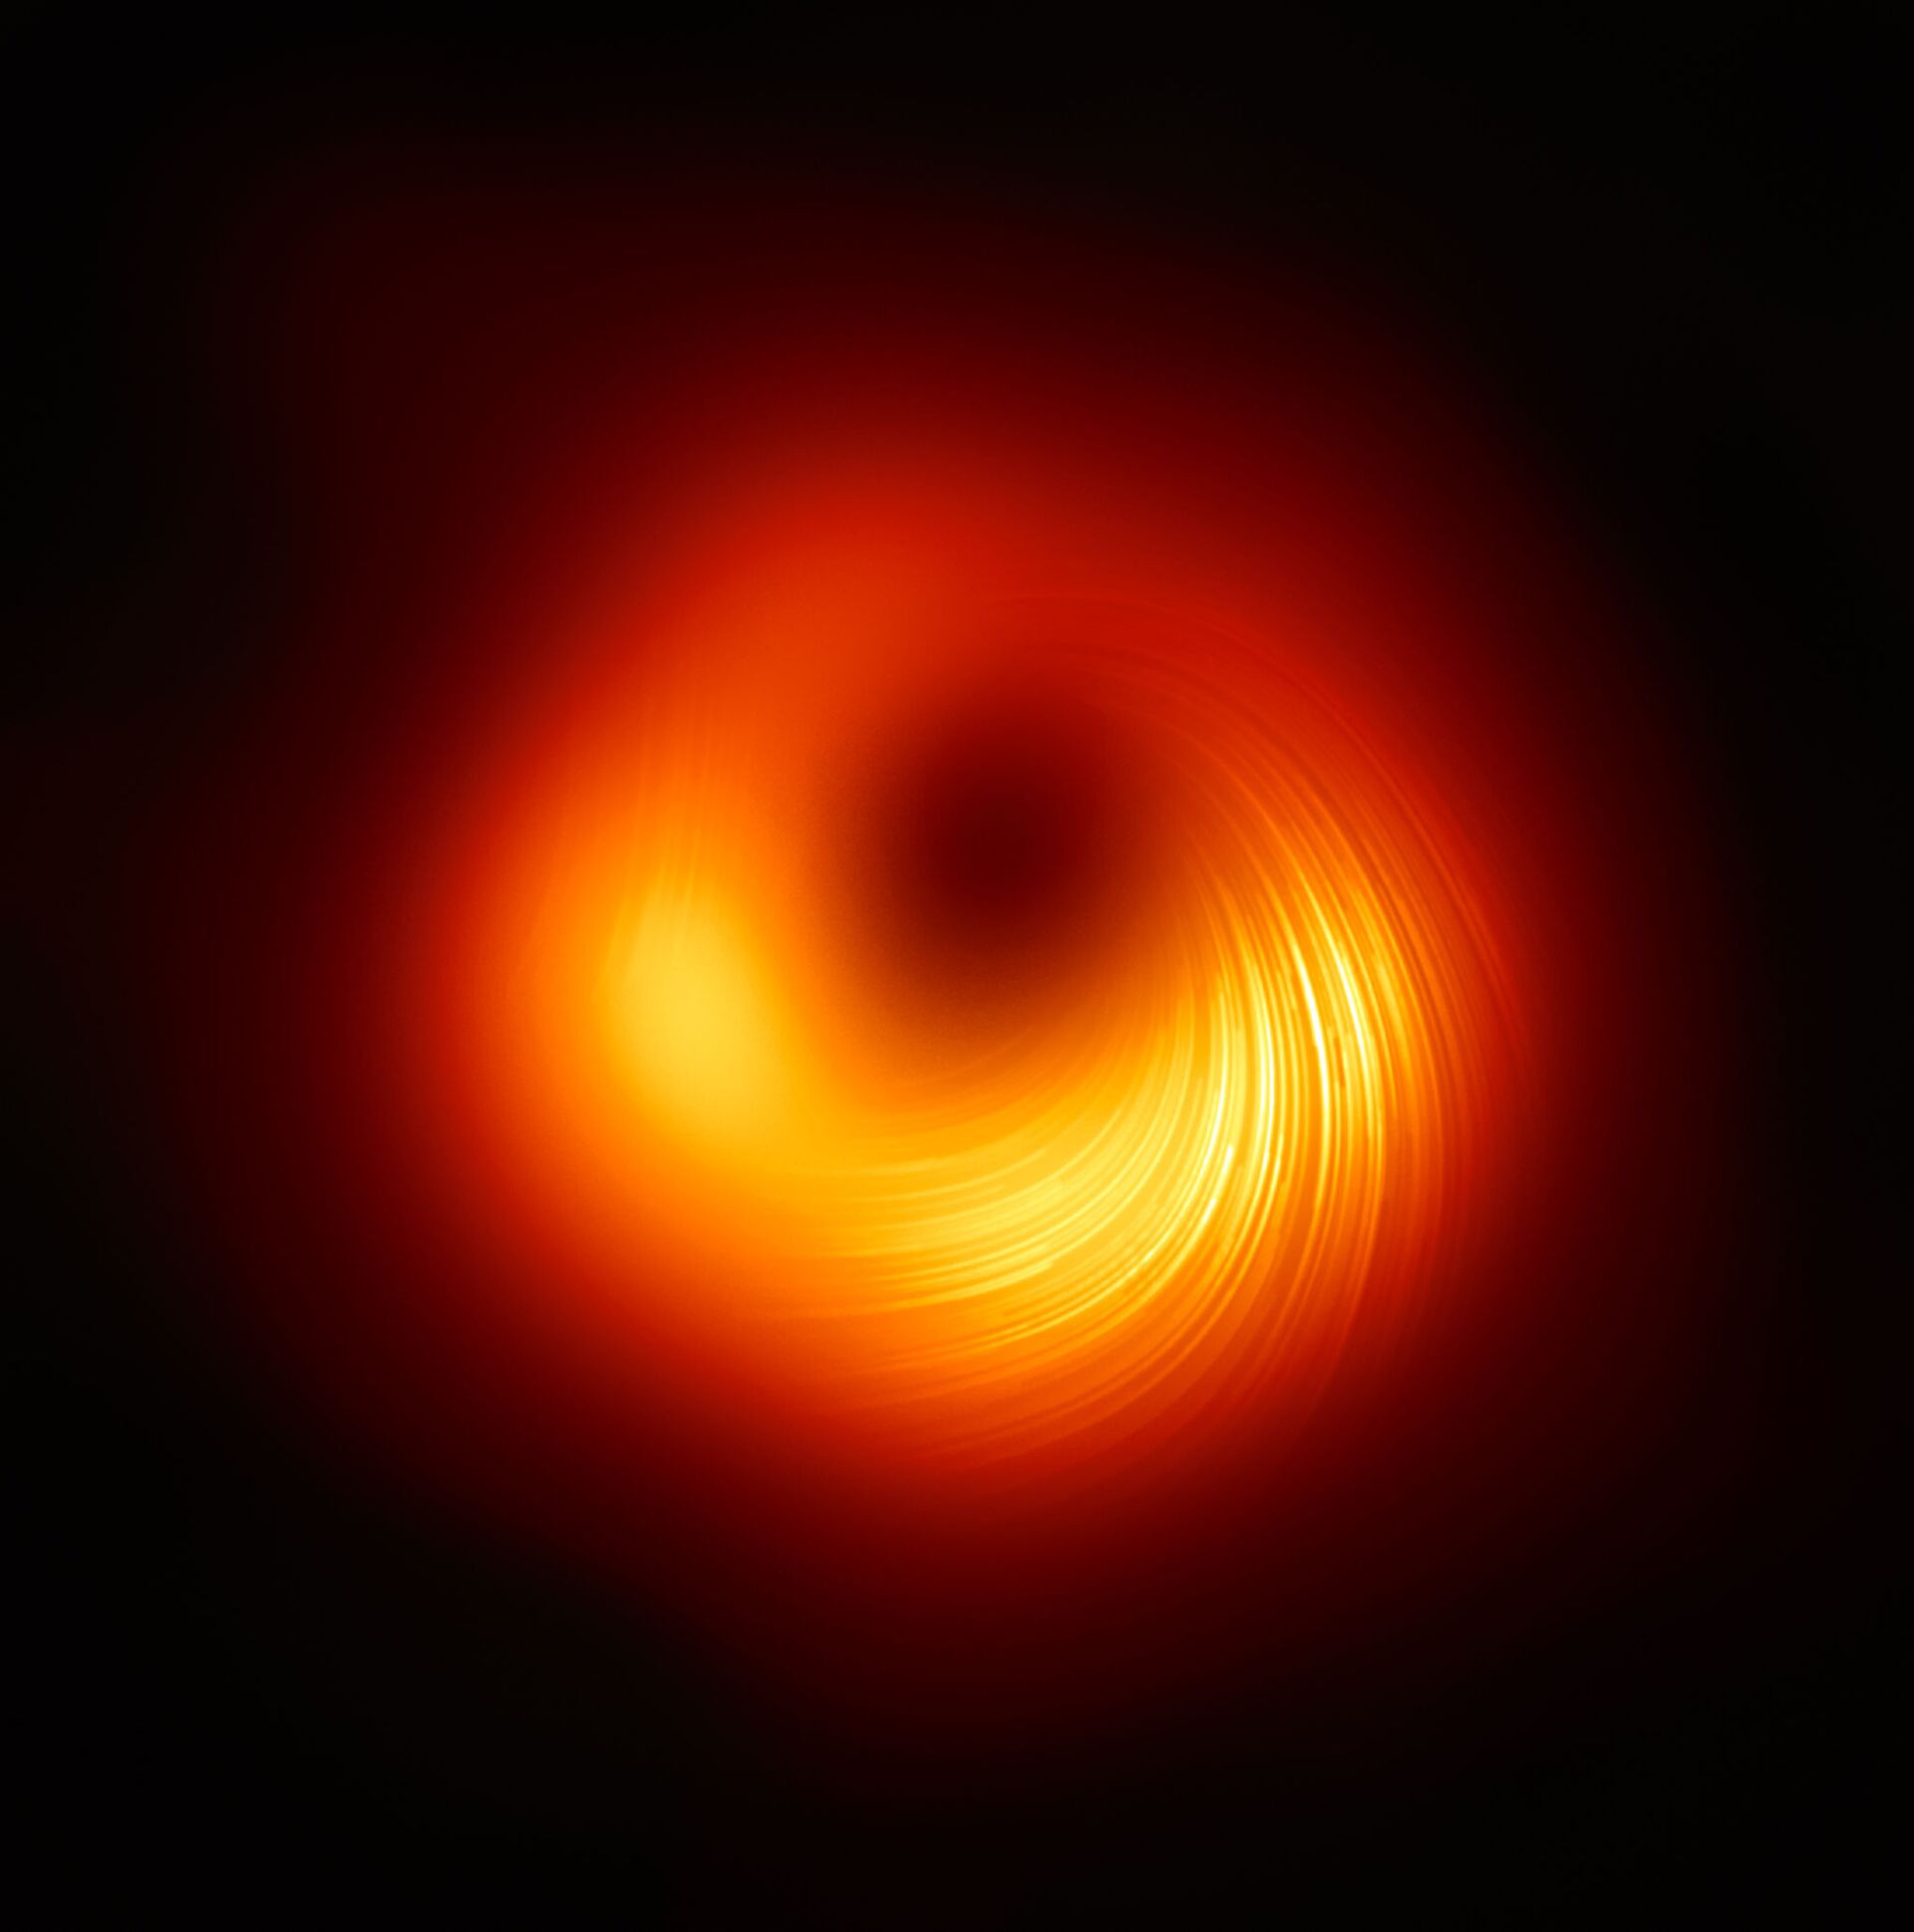 'Marco importante': FOTO mostra pela 1ª vez campo magnético de buraco negro - Sputnik Brasil, 1920, 25.03.2021